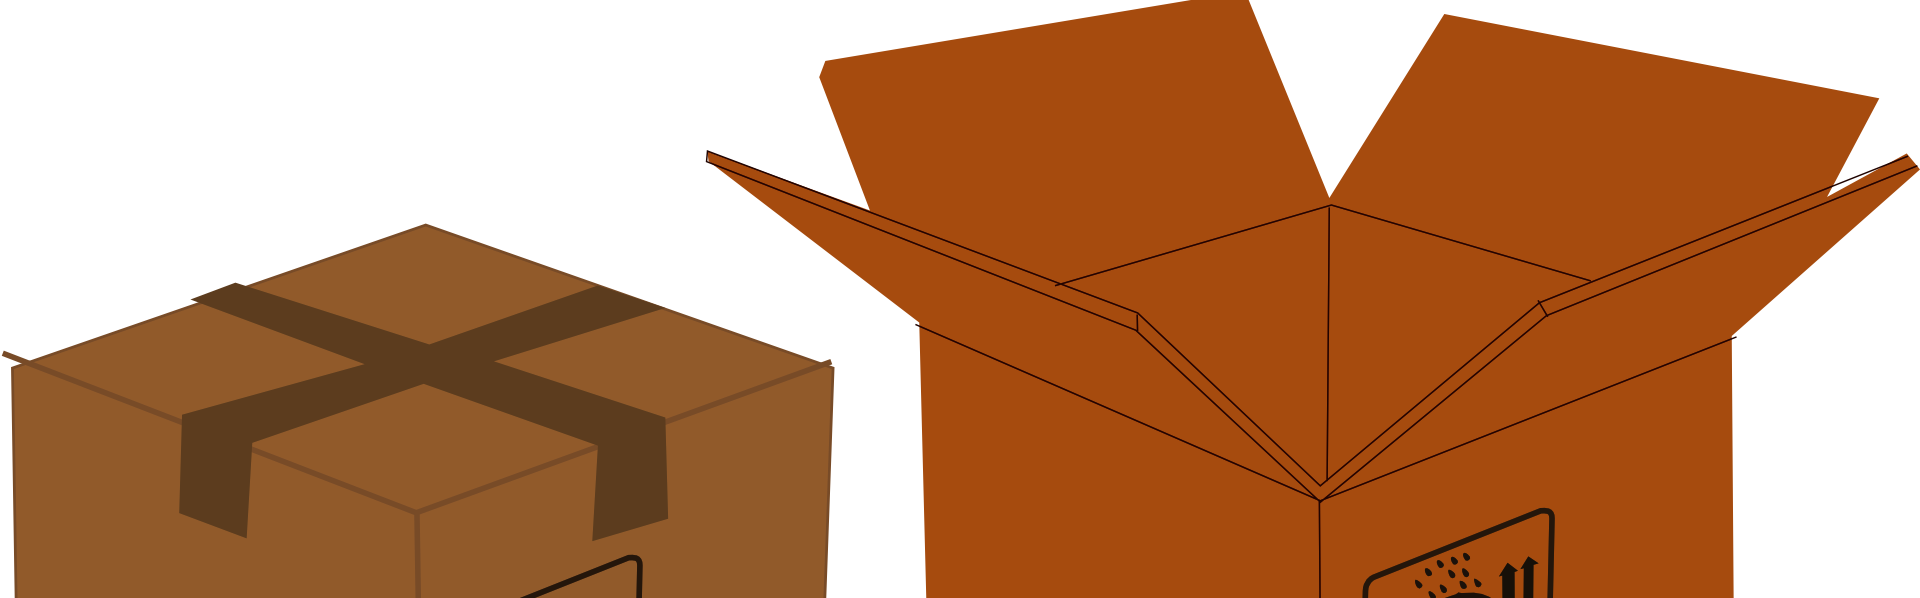 Das Bild zeigt zwei Kartons